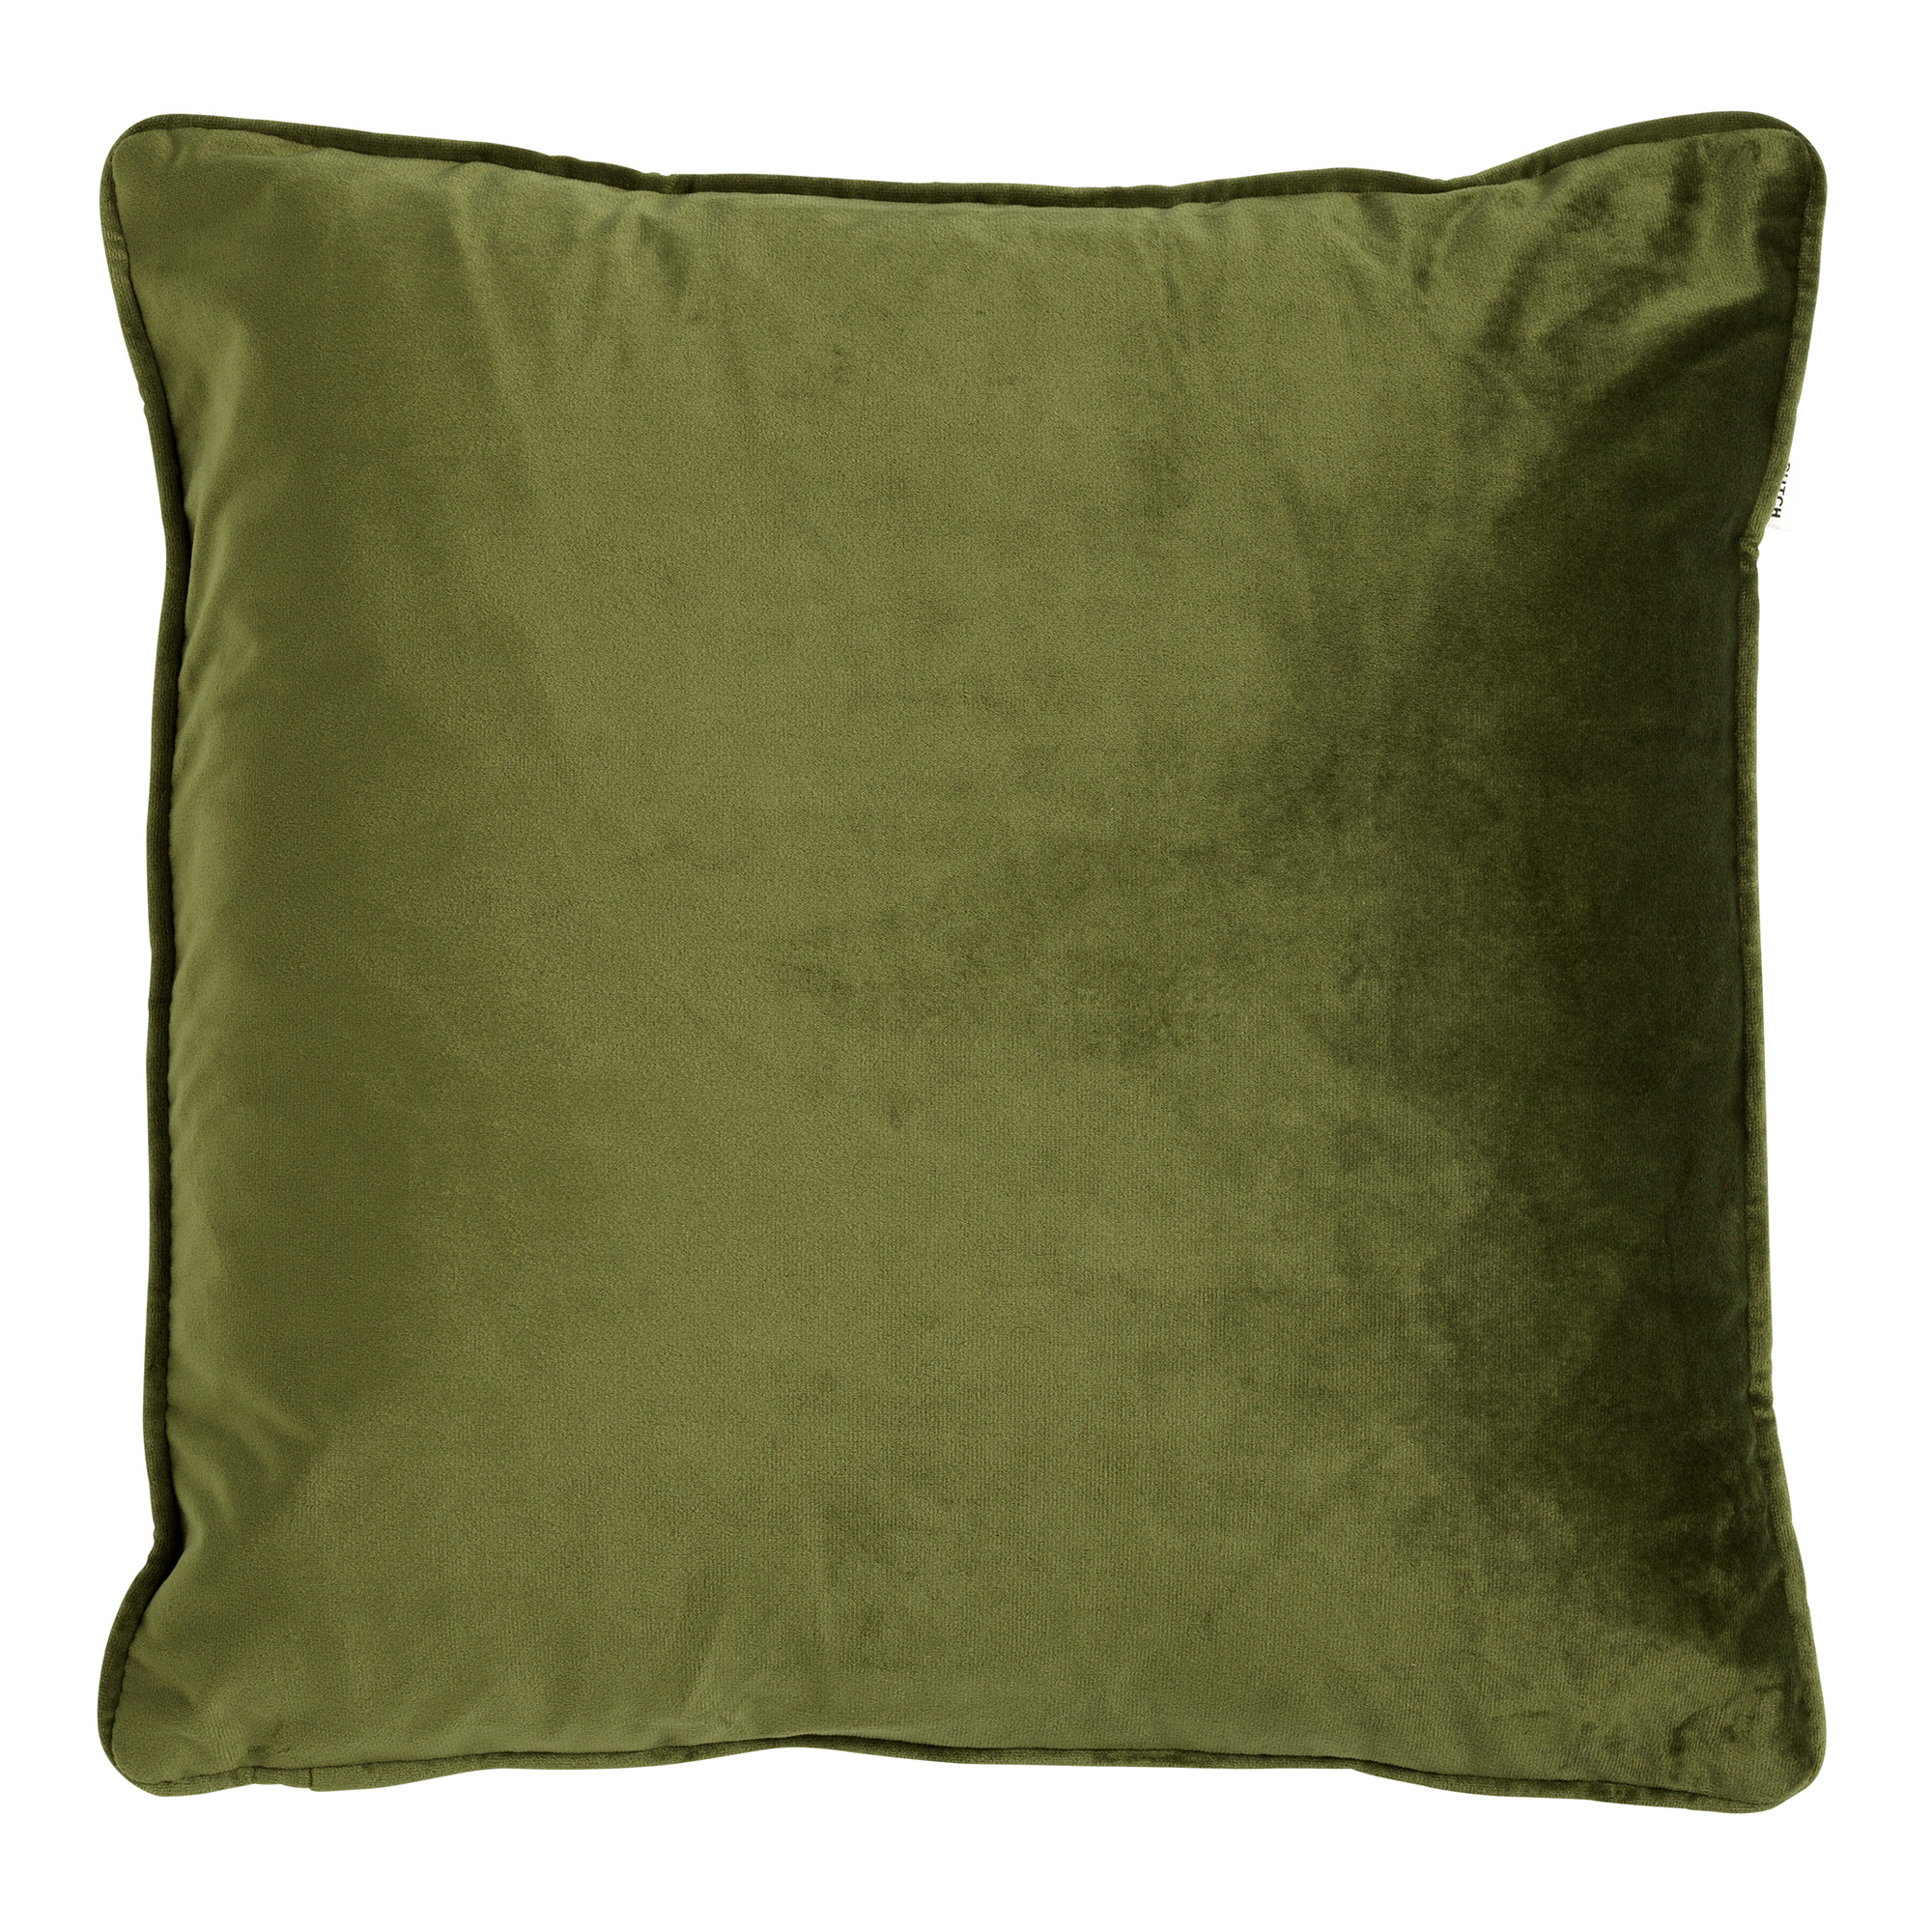 FINN - Kussenhoes 45x45 cm - velvet - effen kleur - Chive - groen